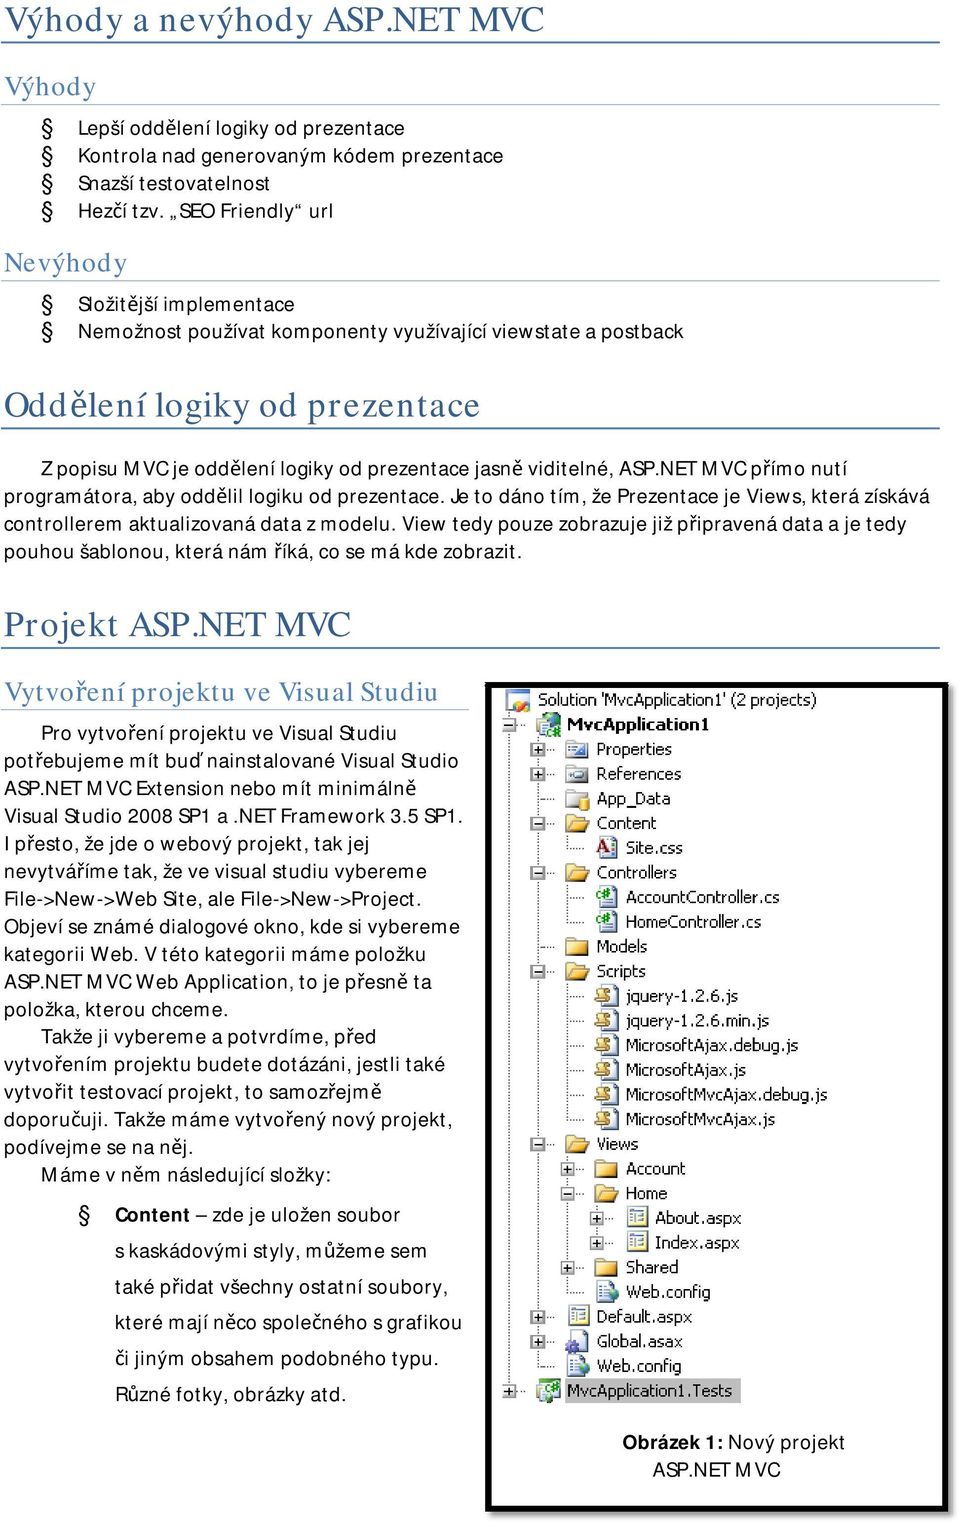 viditelné, ASP.NET MVC přímo nutí programátora, aby oddělil logiku od prezentace. Je to dáno tím, že Prezentace je Views, která získává controllerem aktualizovaná data z modelu.